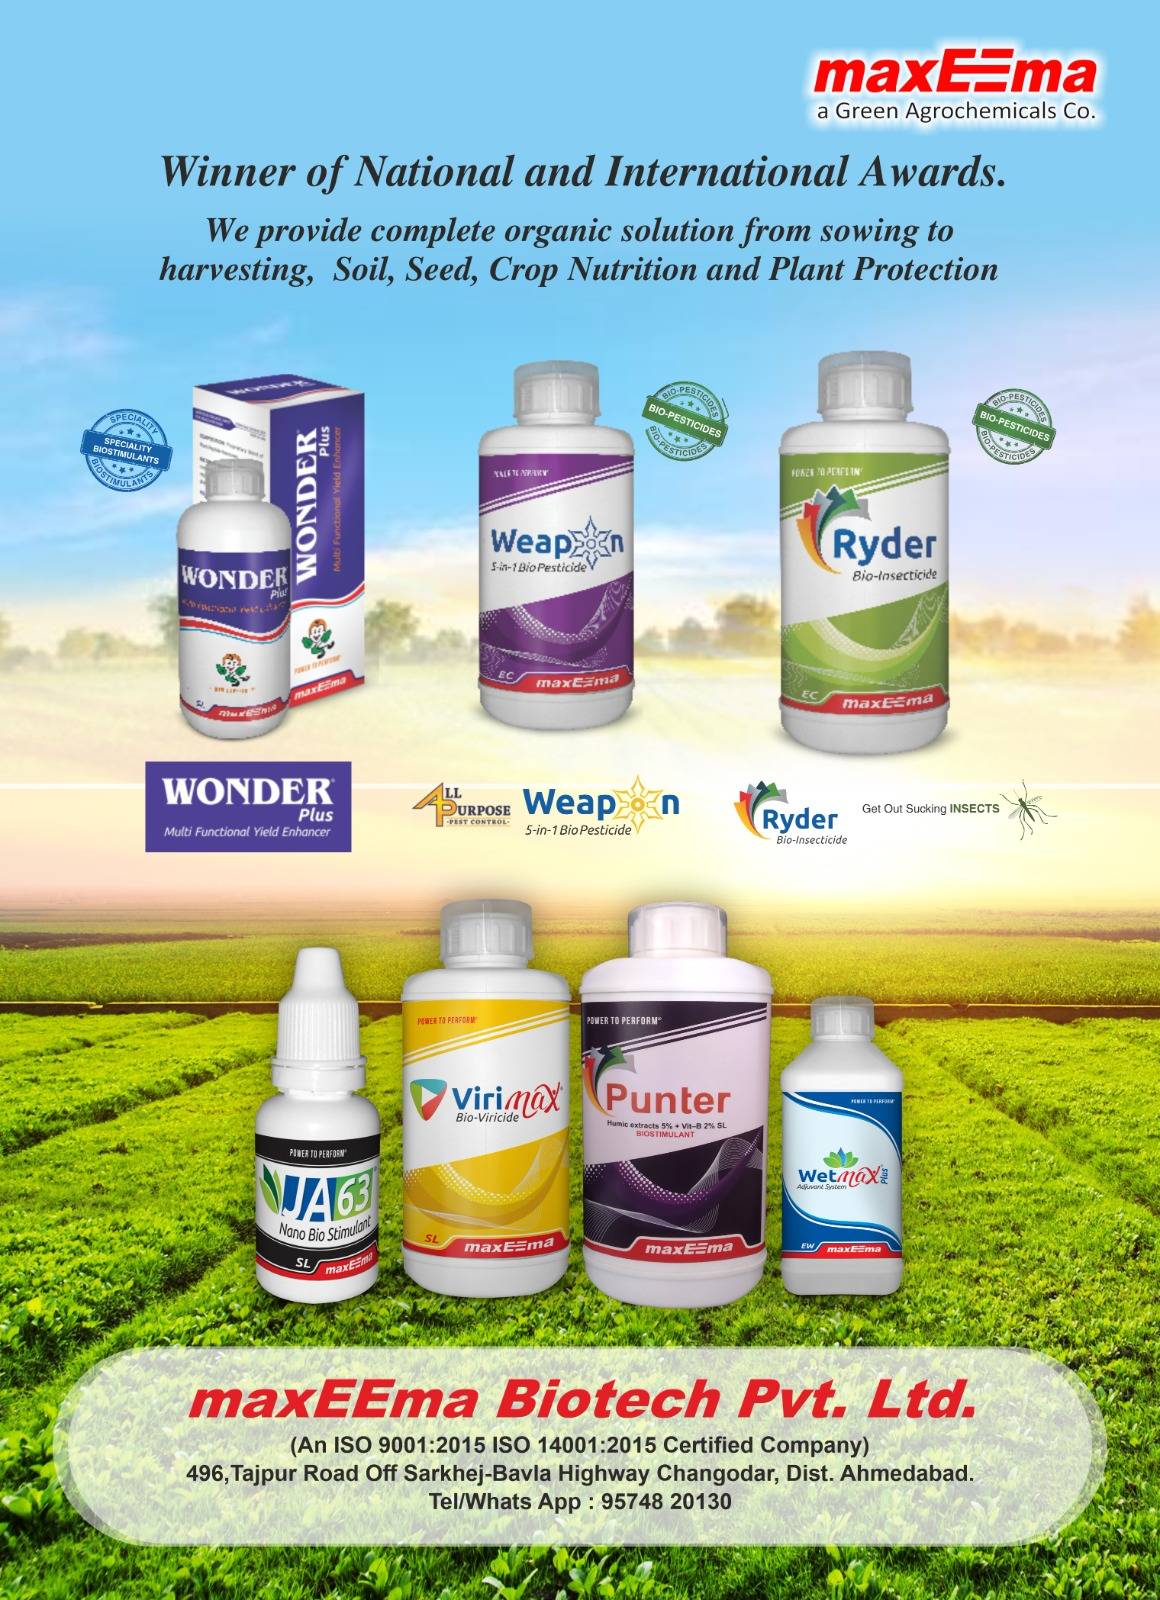 maxEEma Biotech Pvt. Ltd. Products